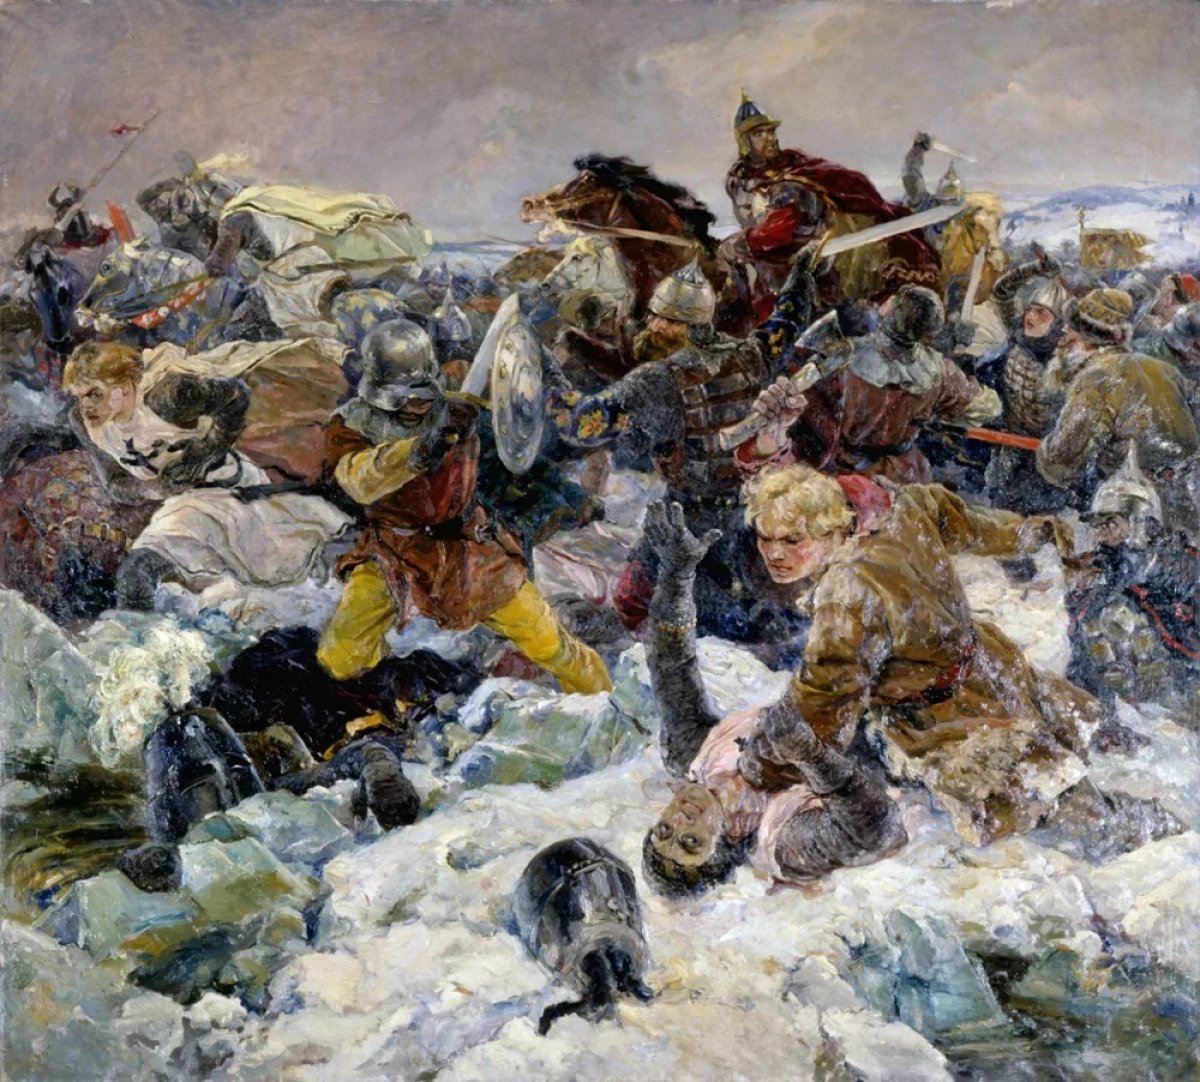 18 апреля в России отмечается День воинской славы — День победы русских воинов князя Александра Невского над немецкими рыцарями на Чудском озере (Ледовое побоище, 1242 год)⚔